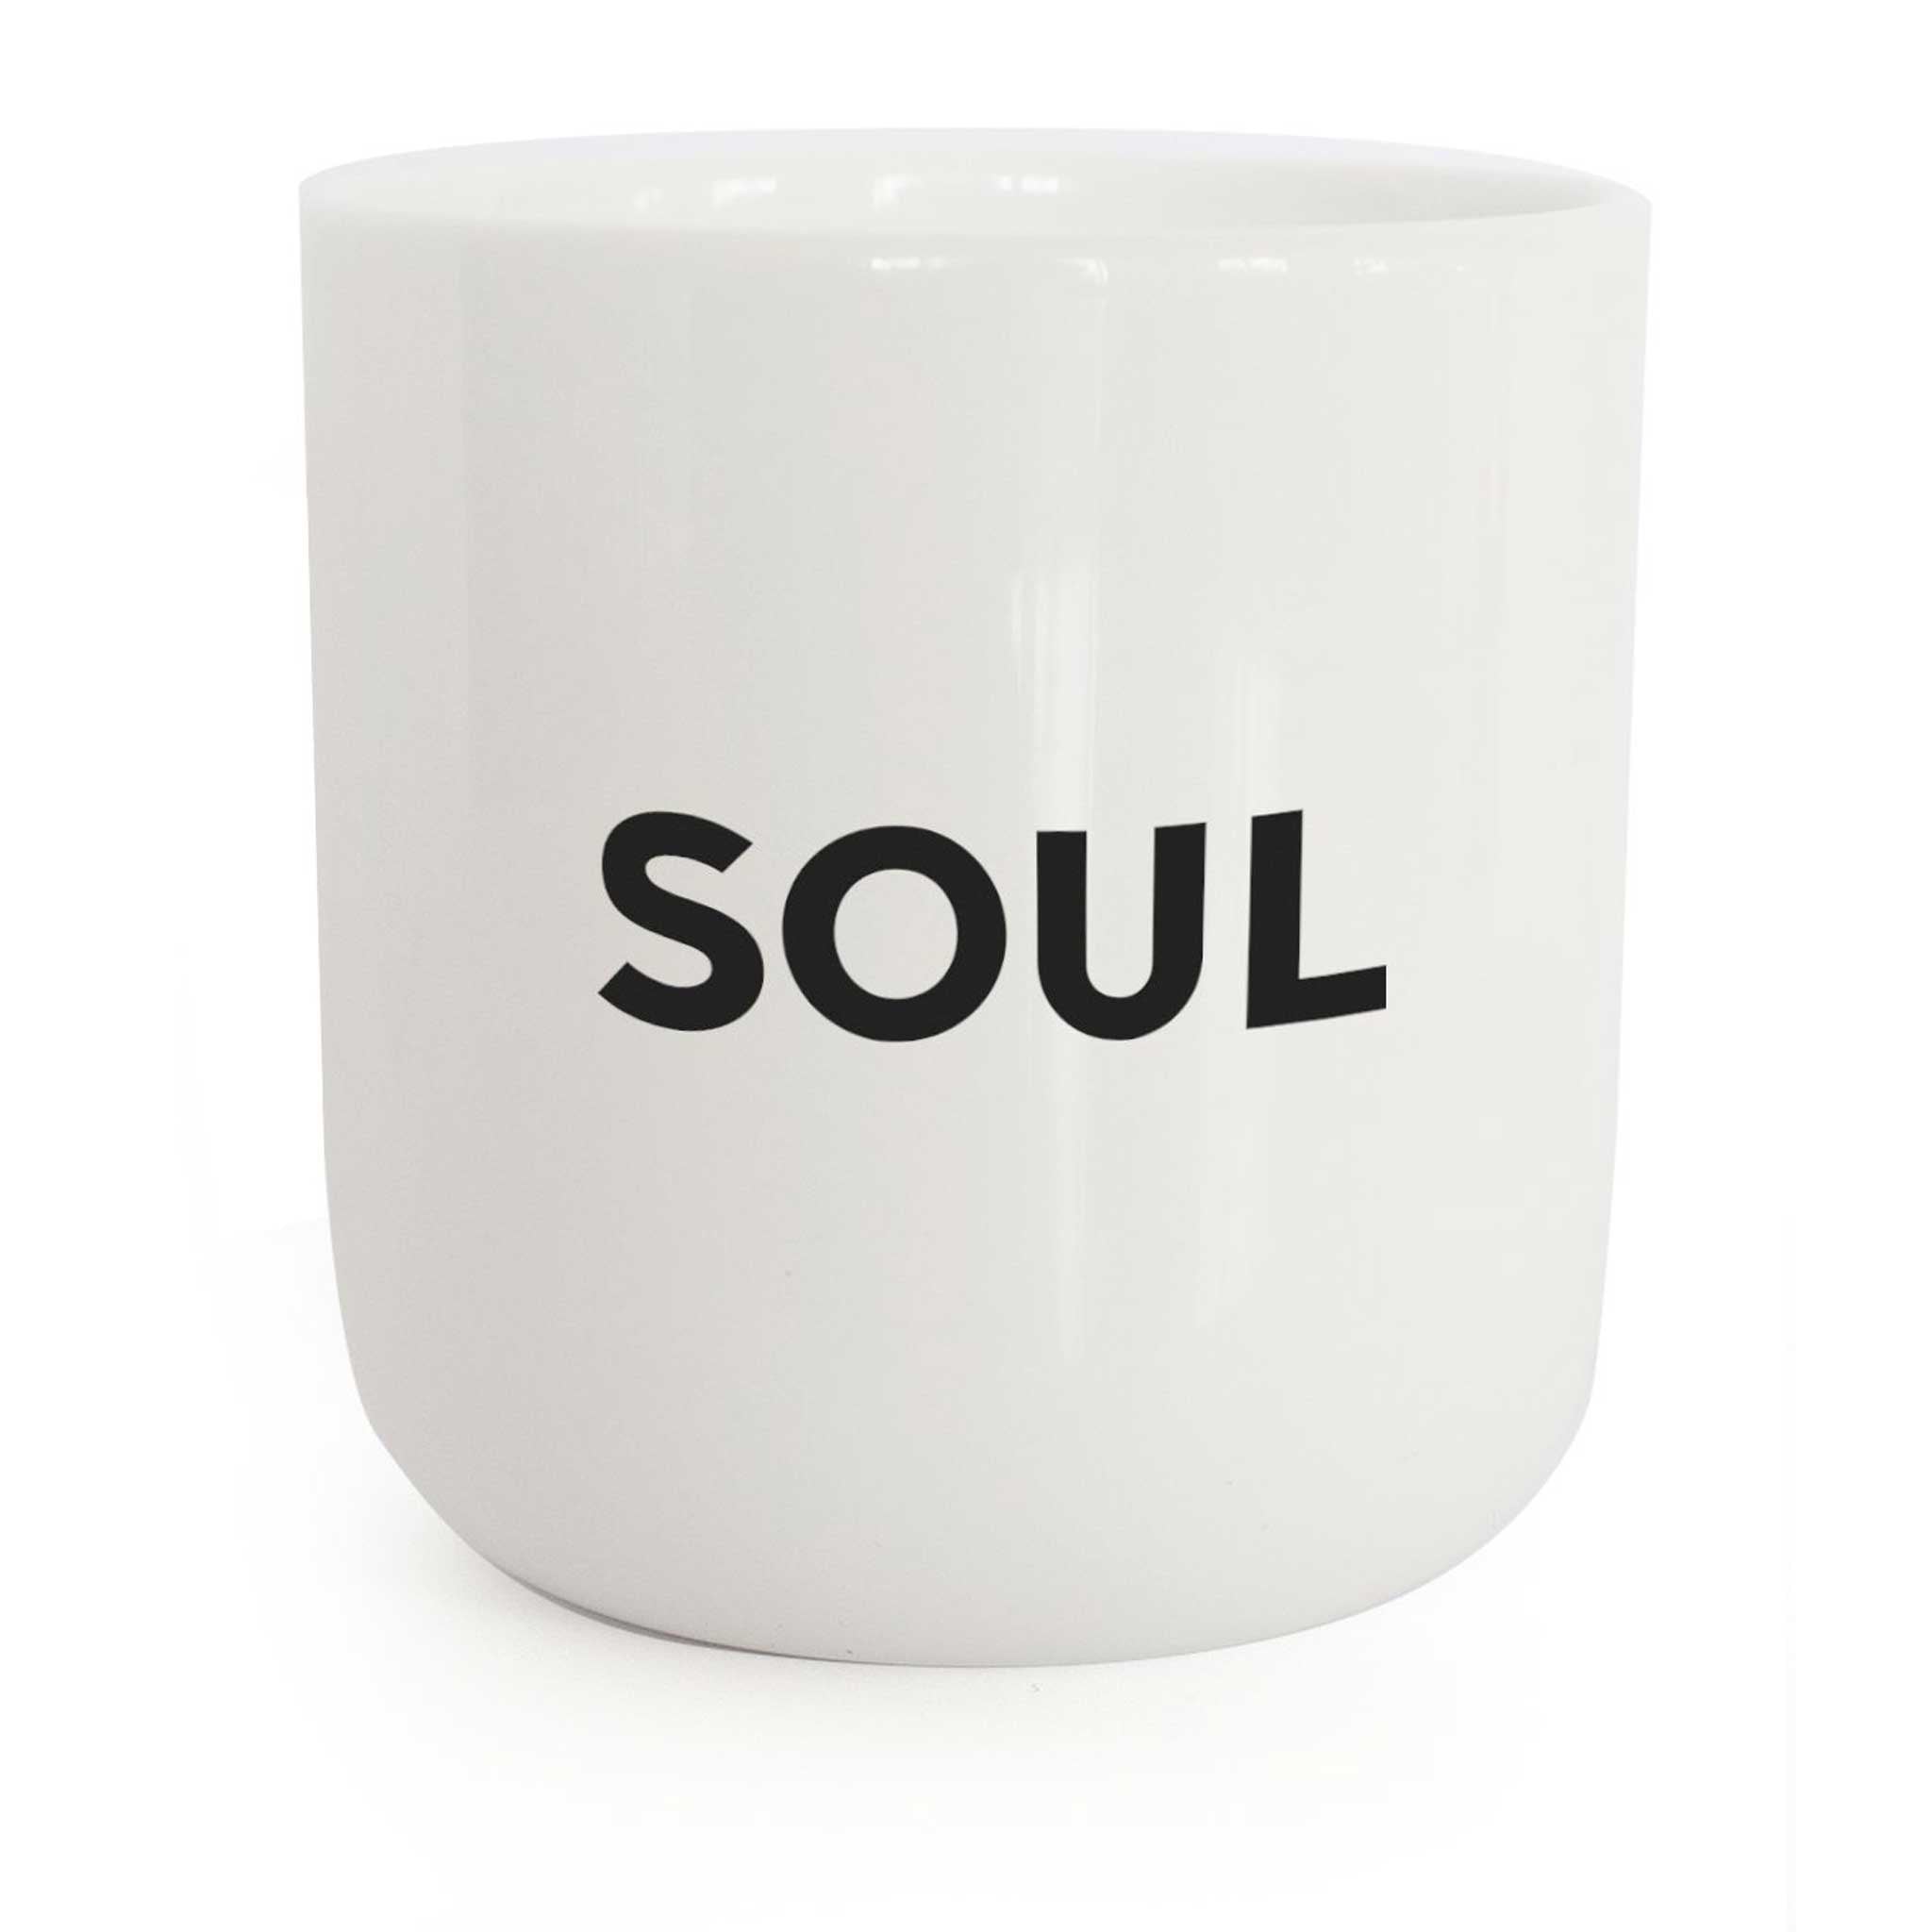 SOUL | weisser Kaffee- & Tee-BECHER mit schwarzer Typo | Beat Serie | PLTY